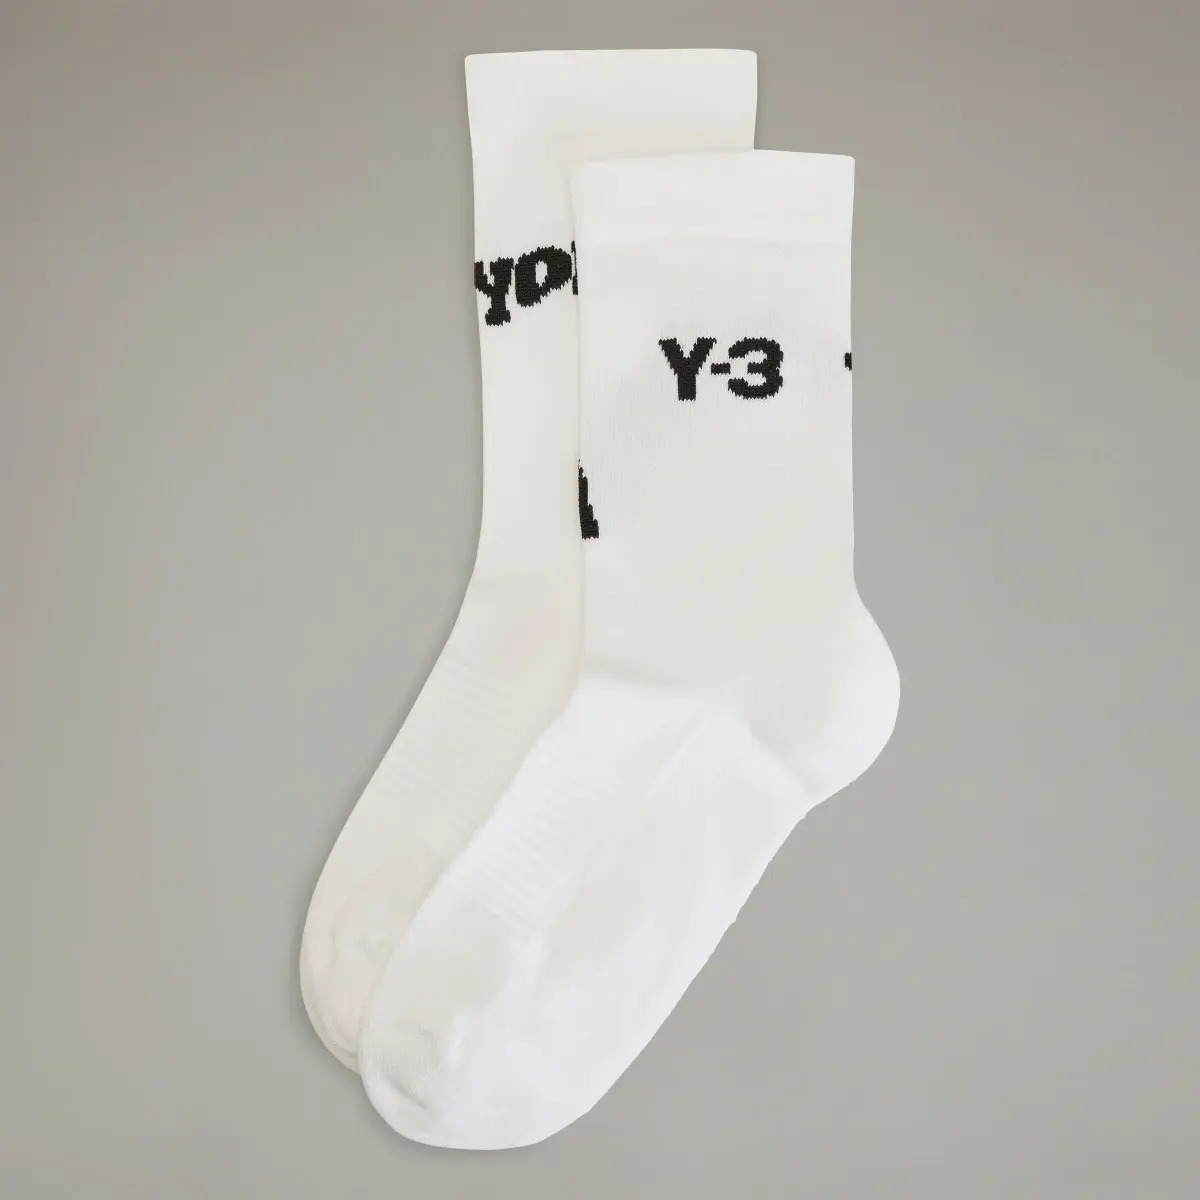 Adidas Y-3 Crew Socken. 2